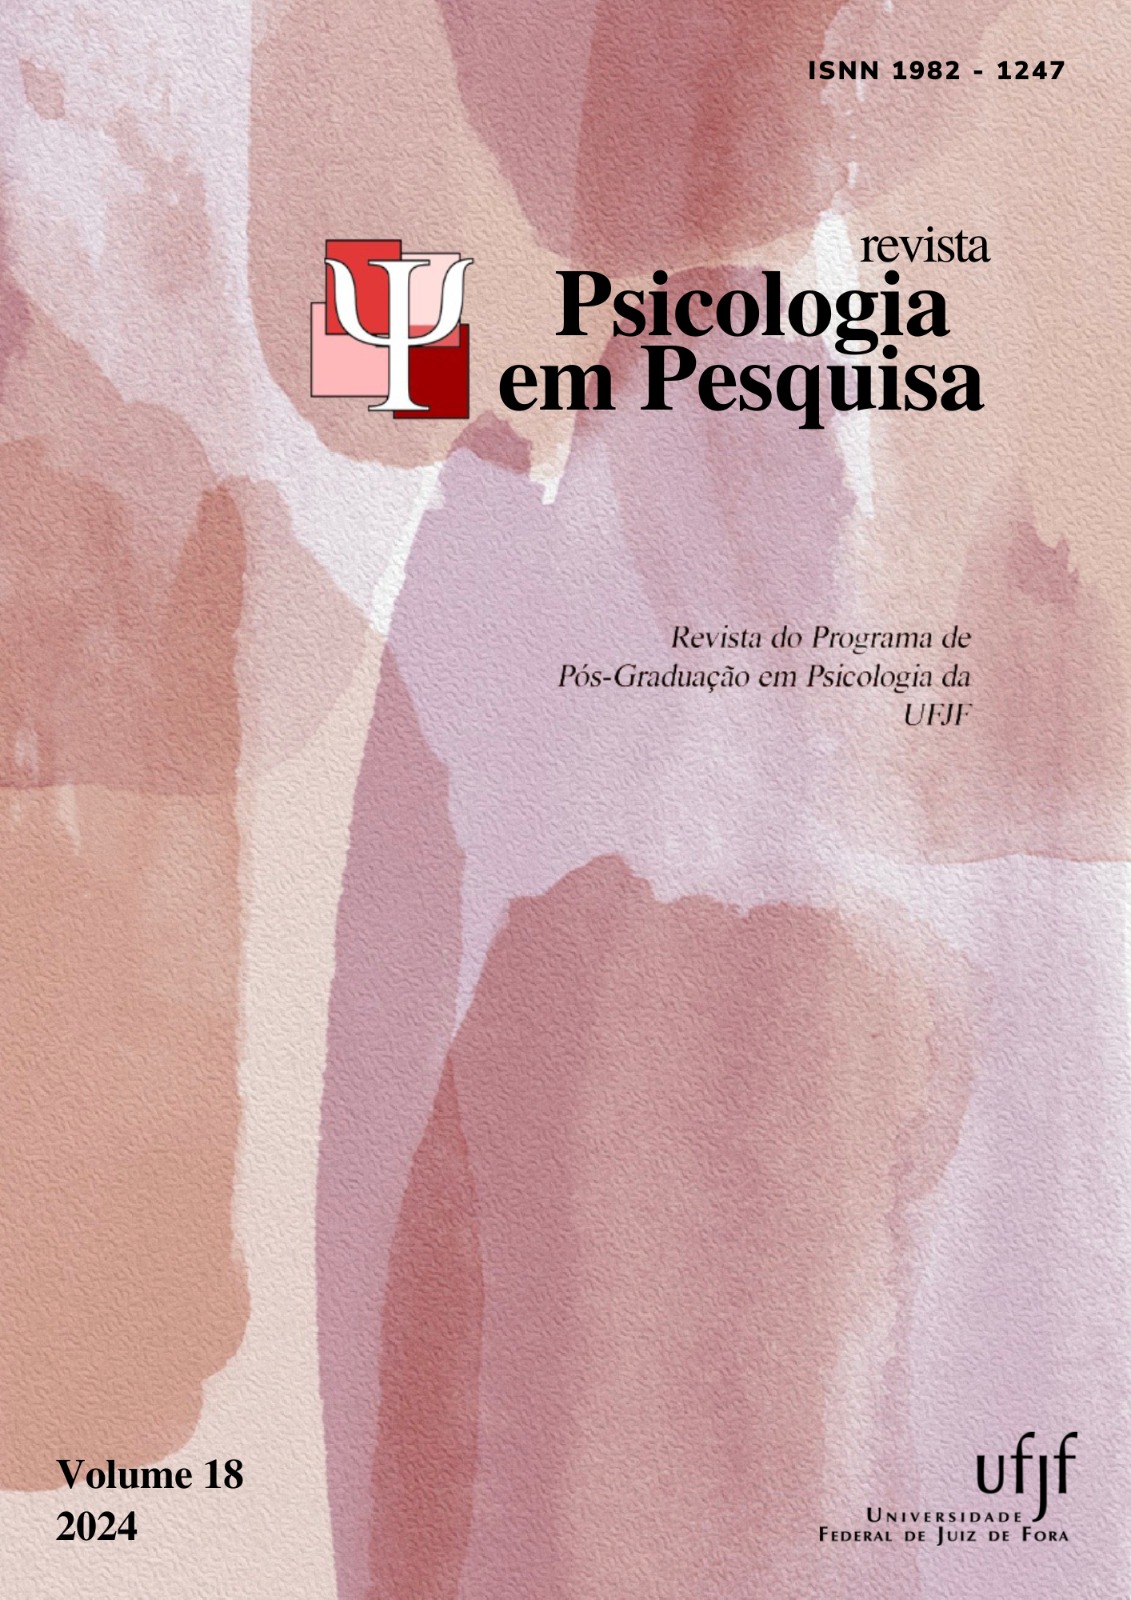 					Visualizar v. 18 n. 2 (2024): Revista Psicologia em Pesquisa
				